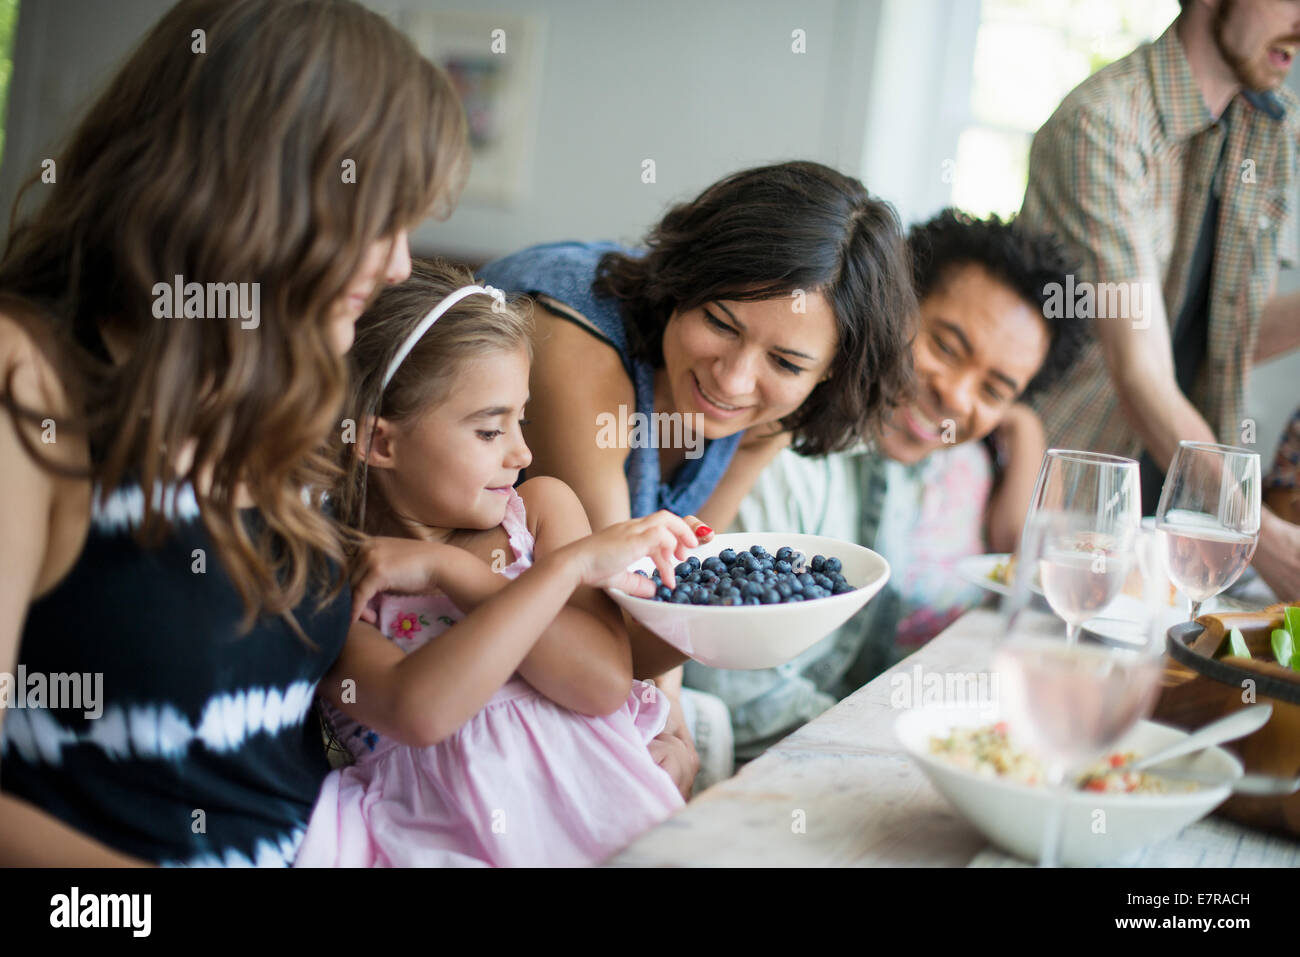 Una reunión familiar para una comida. Adultos y niños alrededor de una mesa. Foto de stock